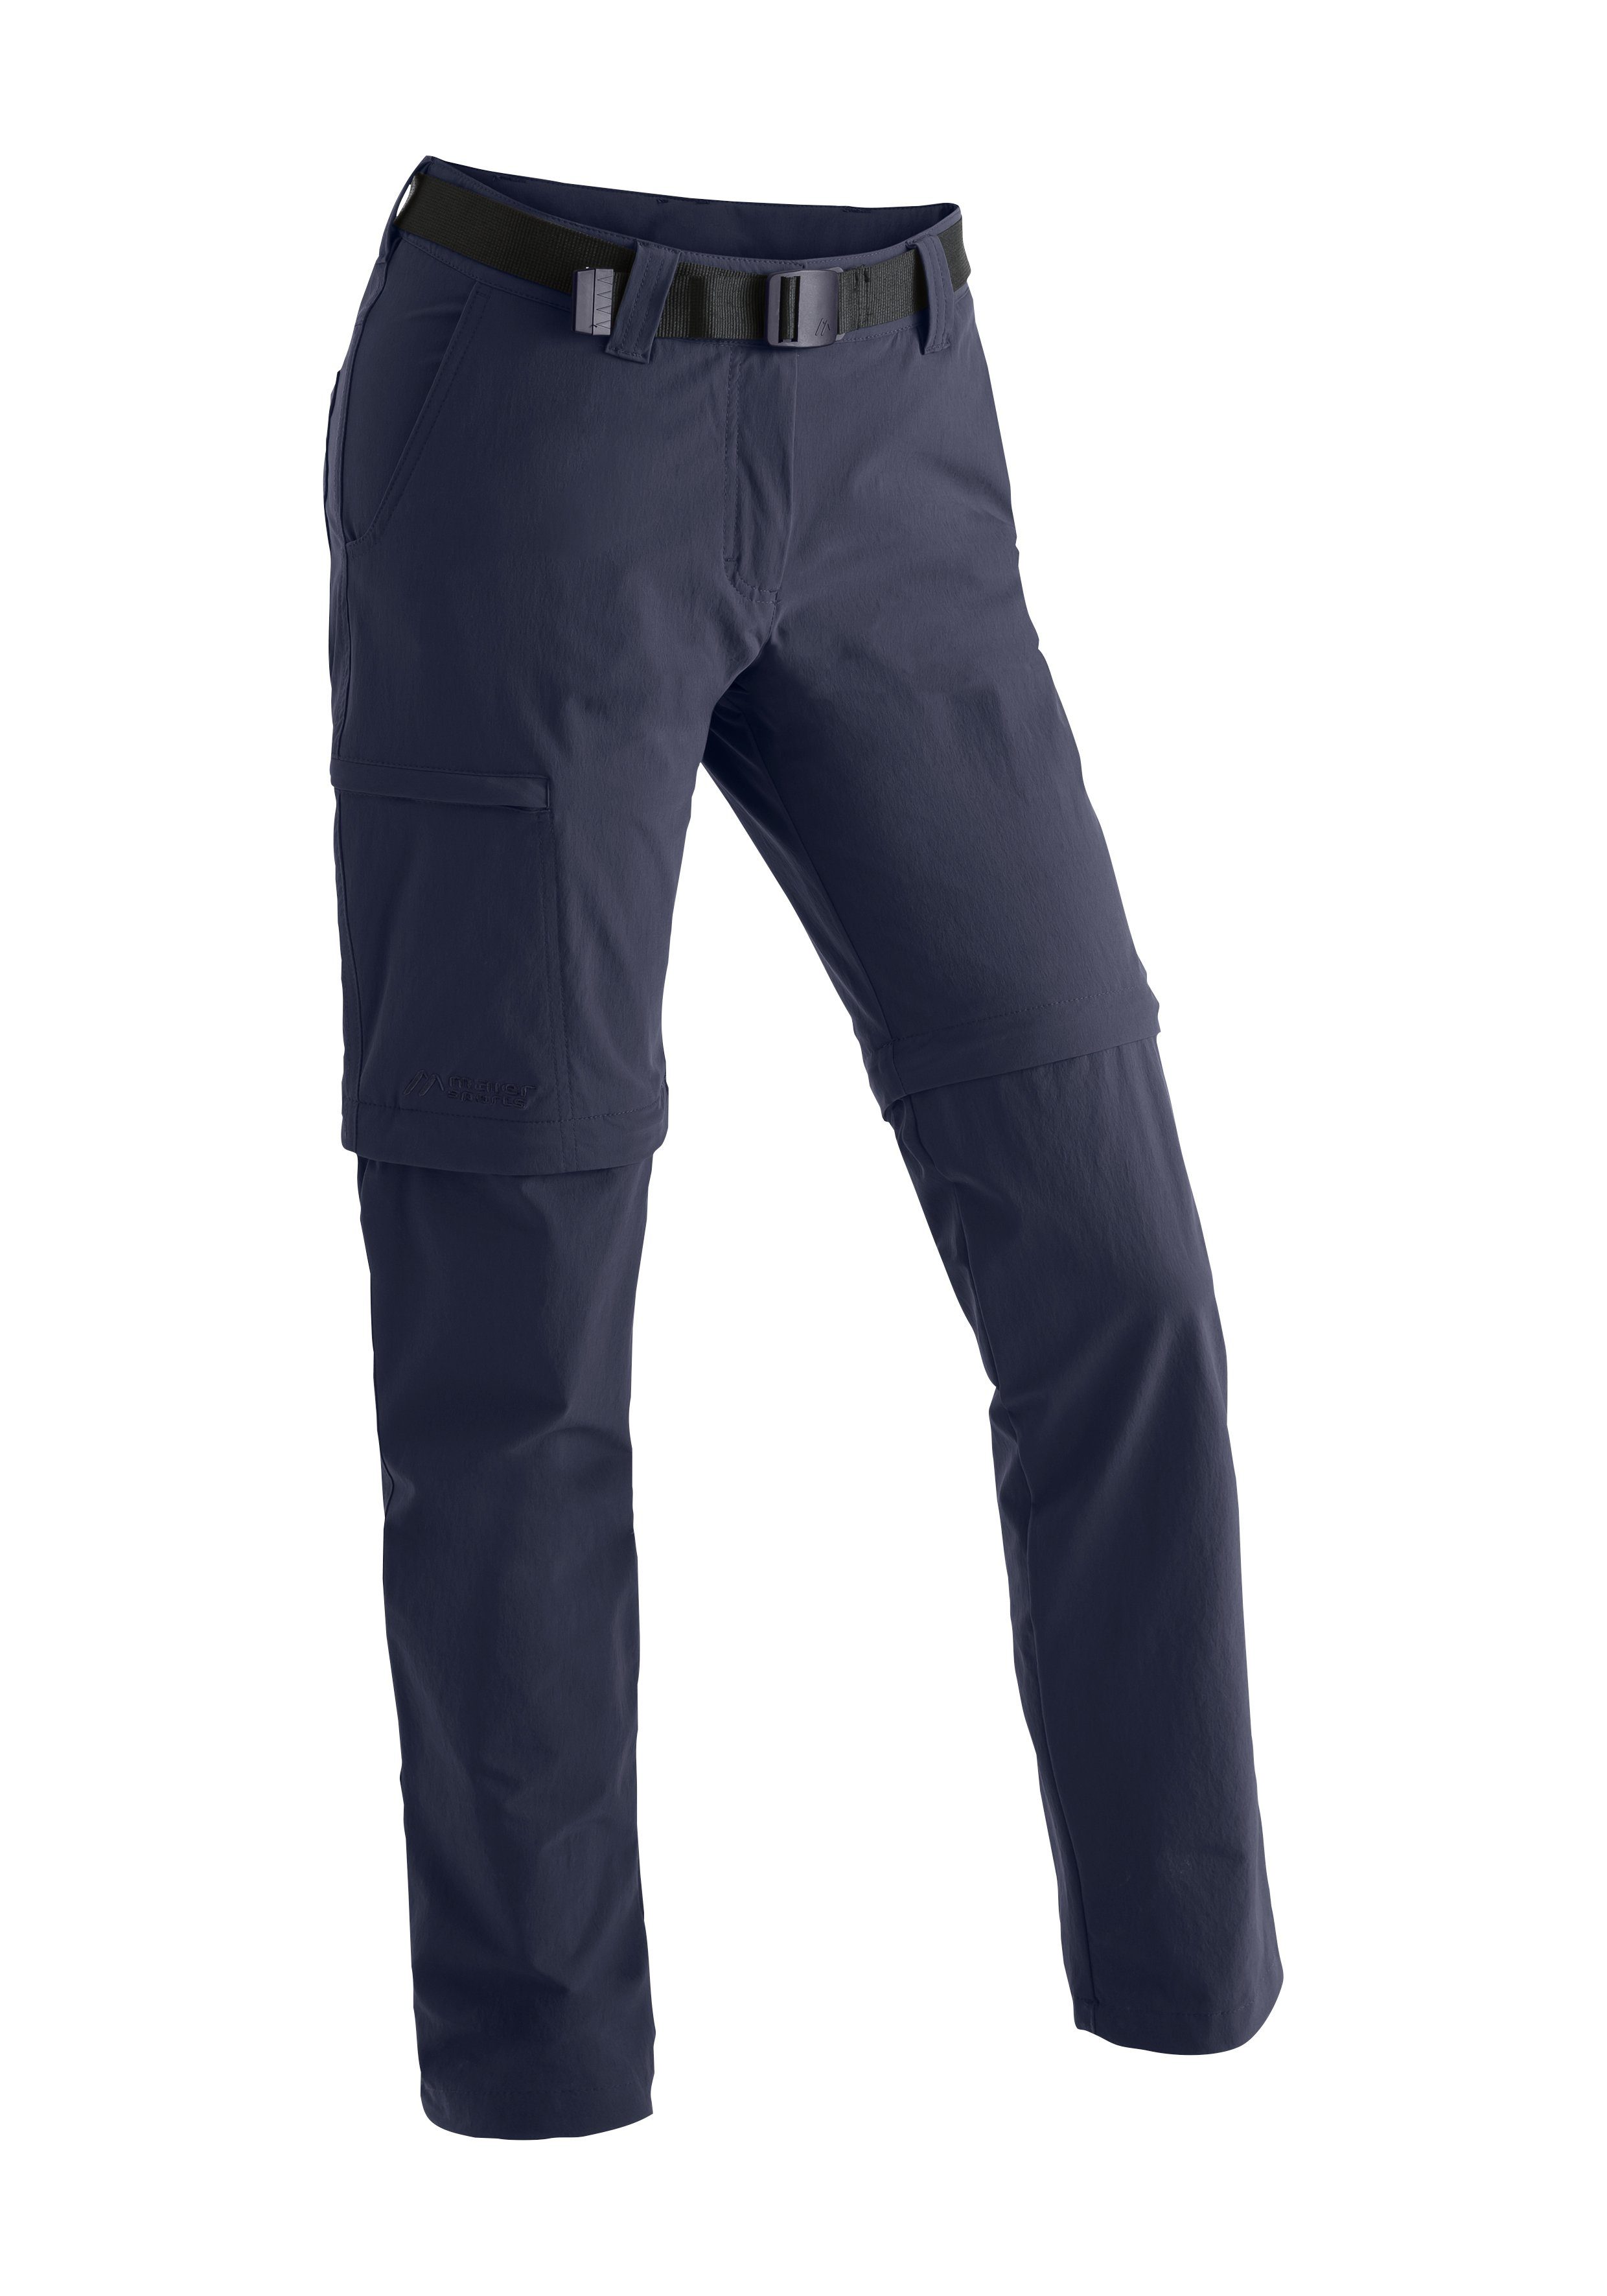 Maier Funktionshose blau atmungsaktive zip slim Damen Outdoor-Hose Sports Wanderhose, Inara zipp-off